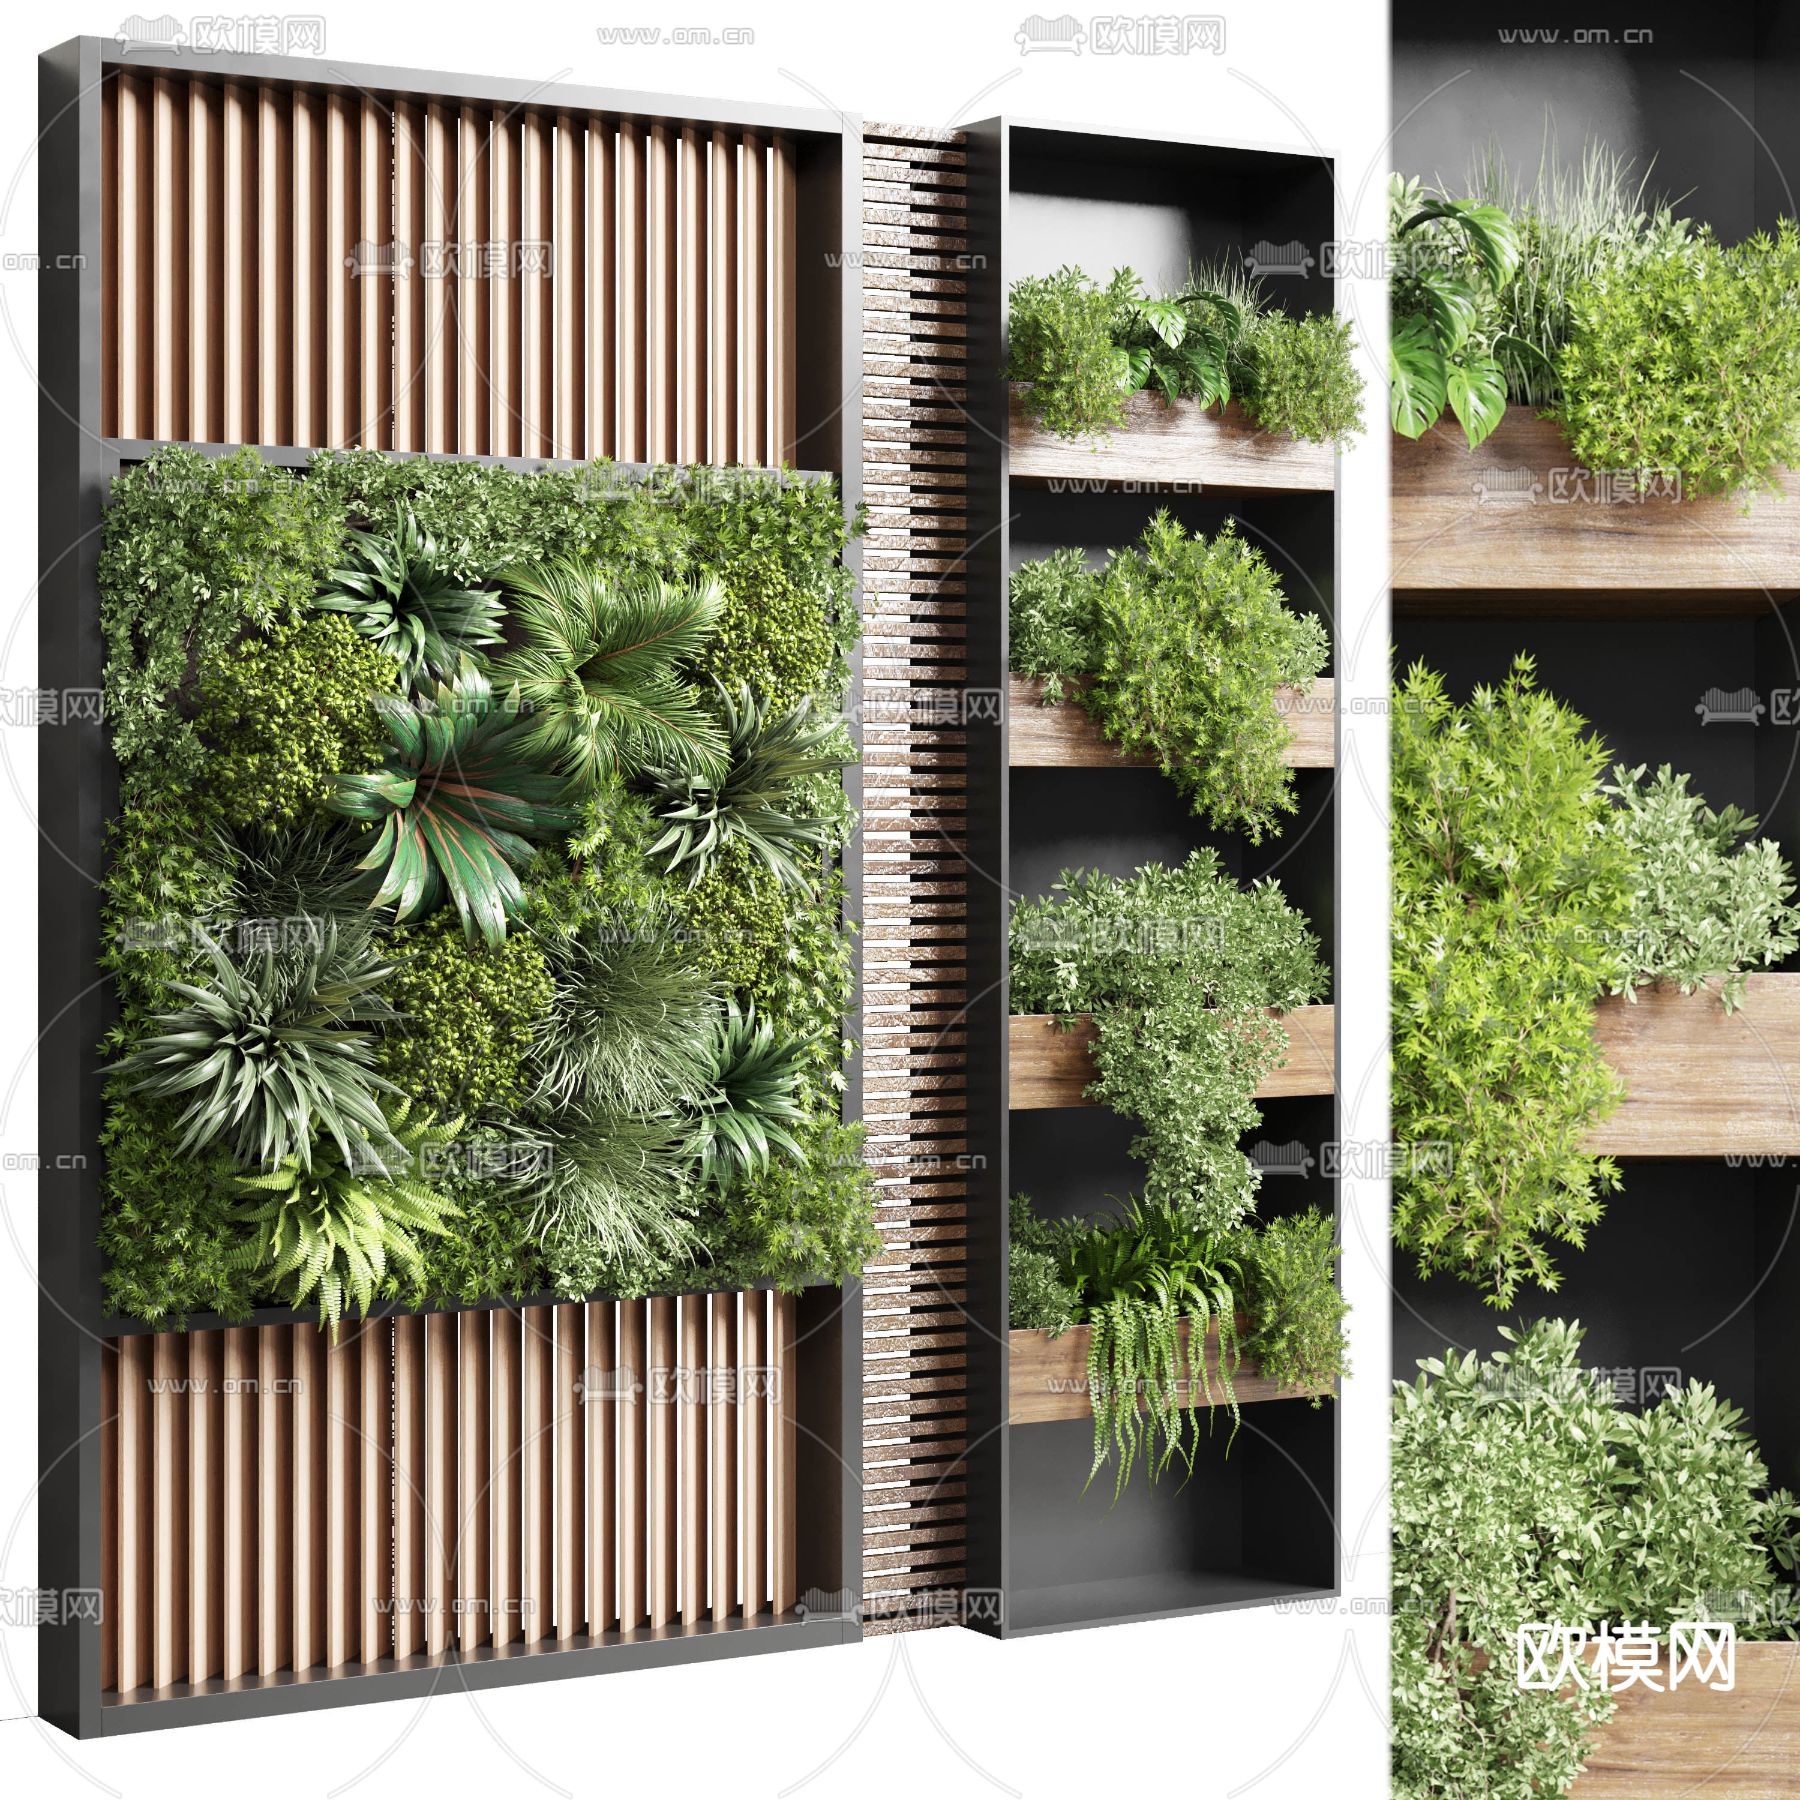 室内立体绿化植物-墙面绿化|垂直绿化|高架桥绿化|立体绿化|桥梁绿化|武汉市安友科技有限公司